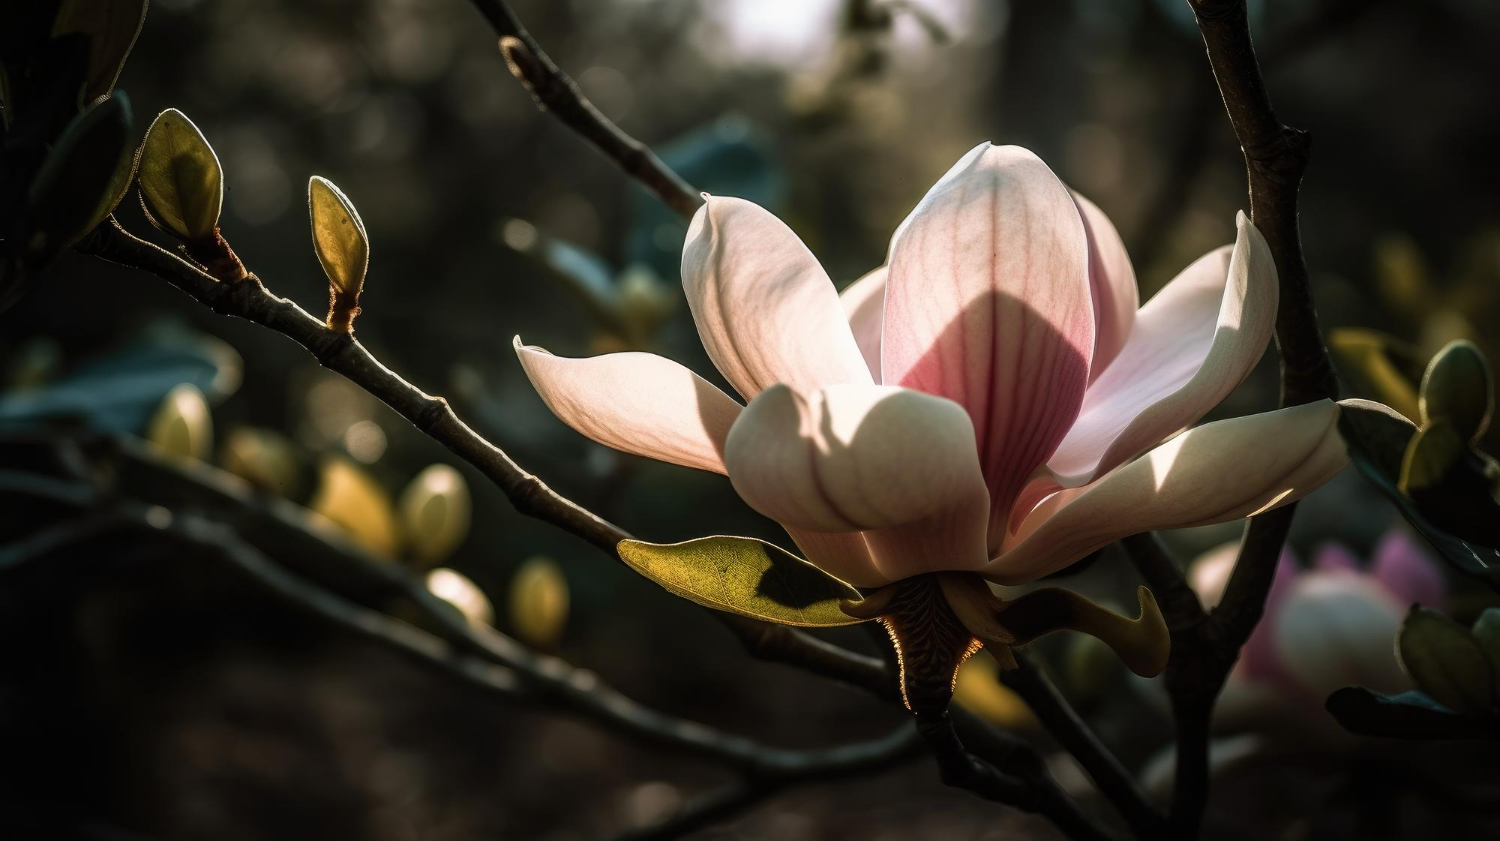 Plantarea magnoliei